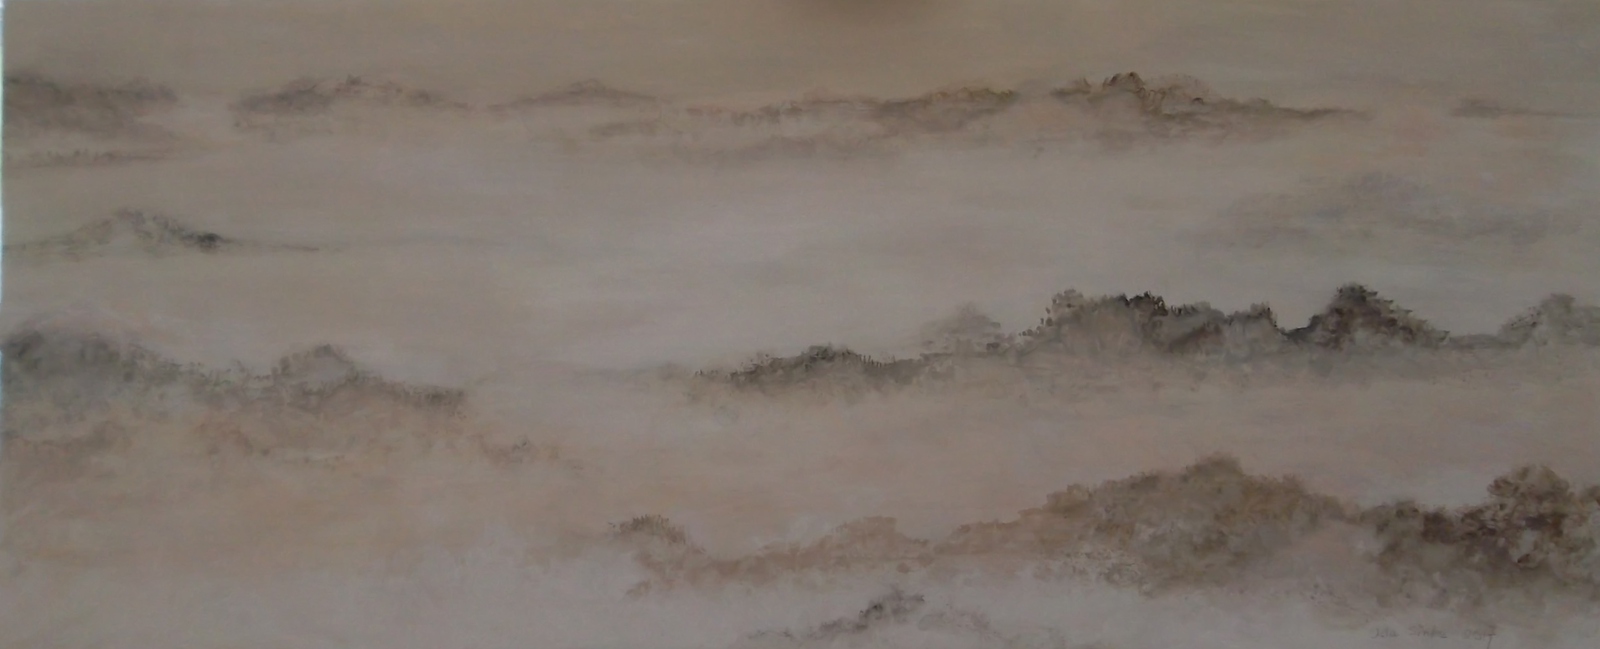 Dunes in the fog